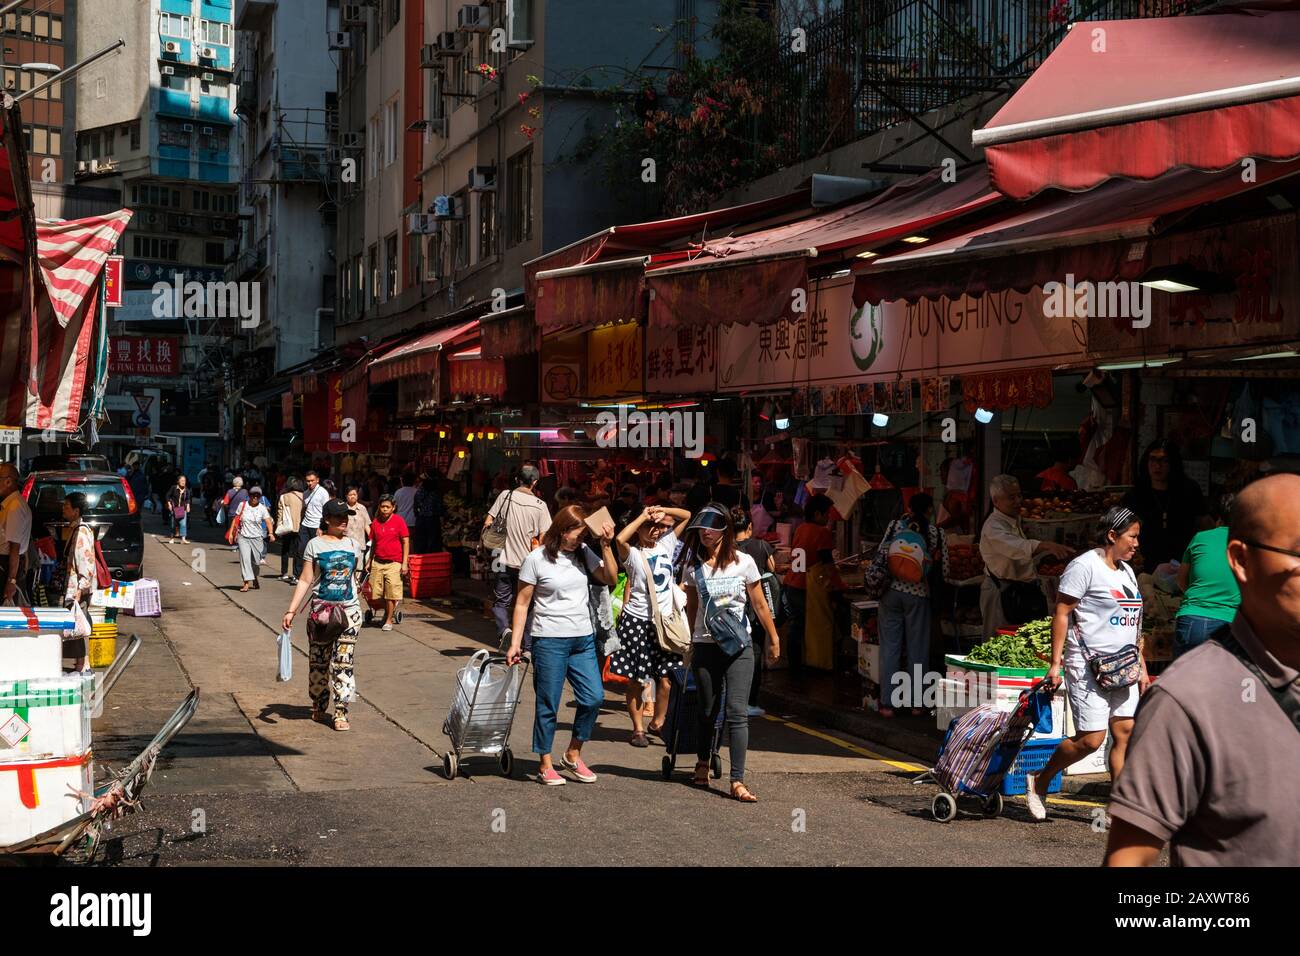 Hong Kong, novembre 2019: Paesaggio urbano con persone sul mercato di strada che comprano e vendono cibo a Shim Shui po, Hong Kong, Cina Foto Stock